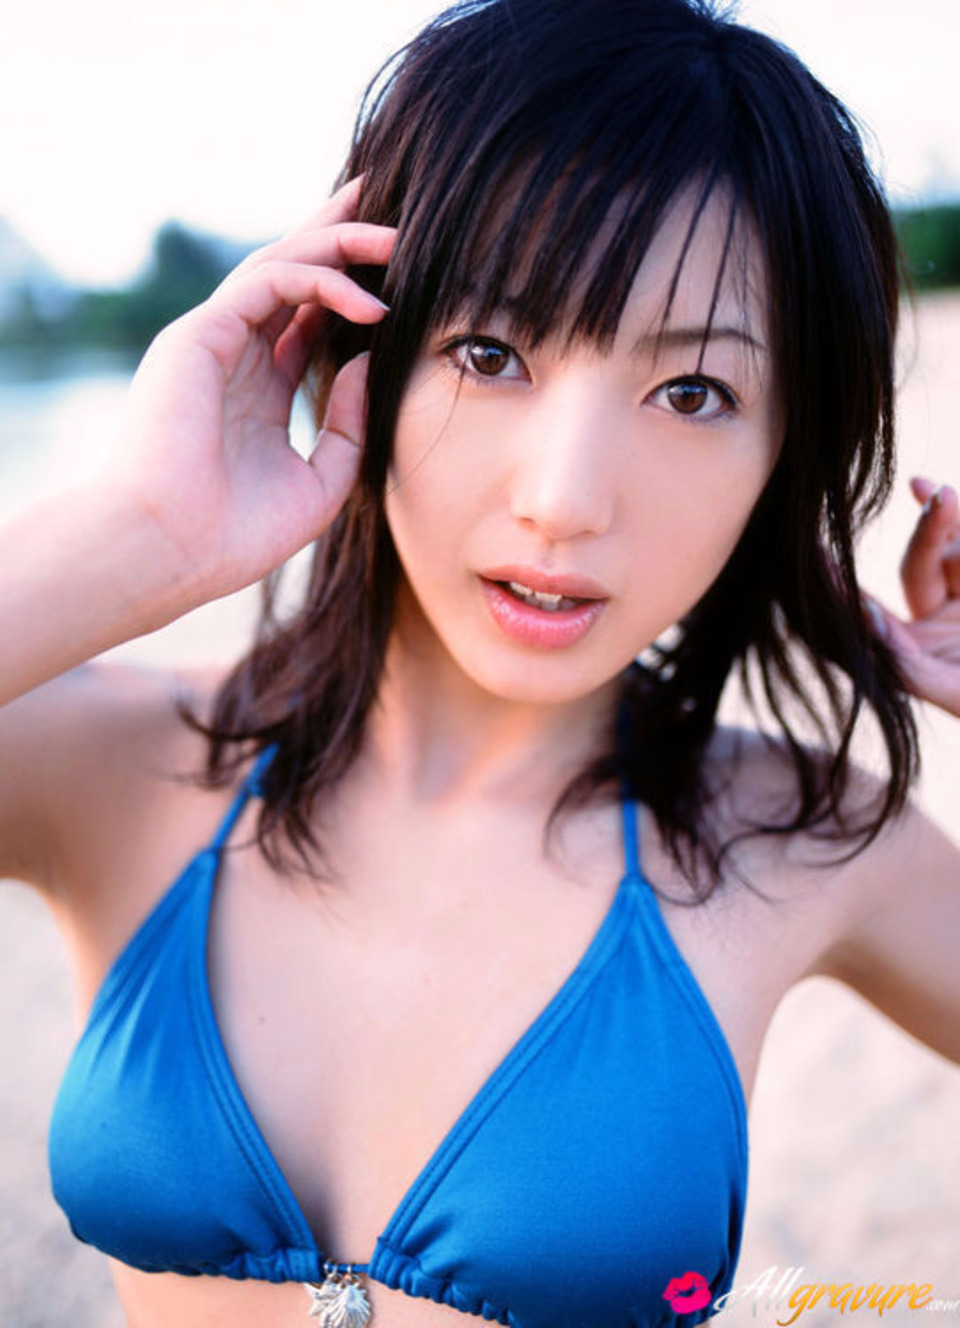 Haruka Ogura